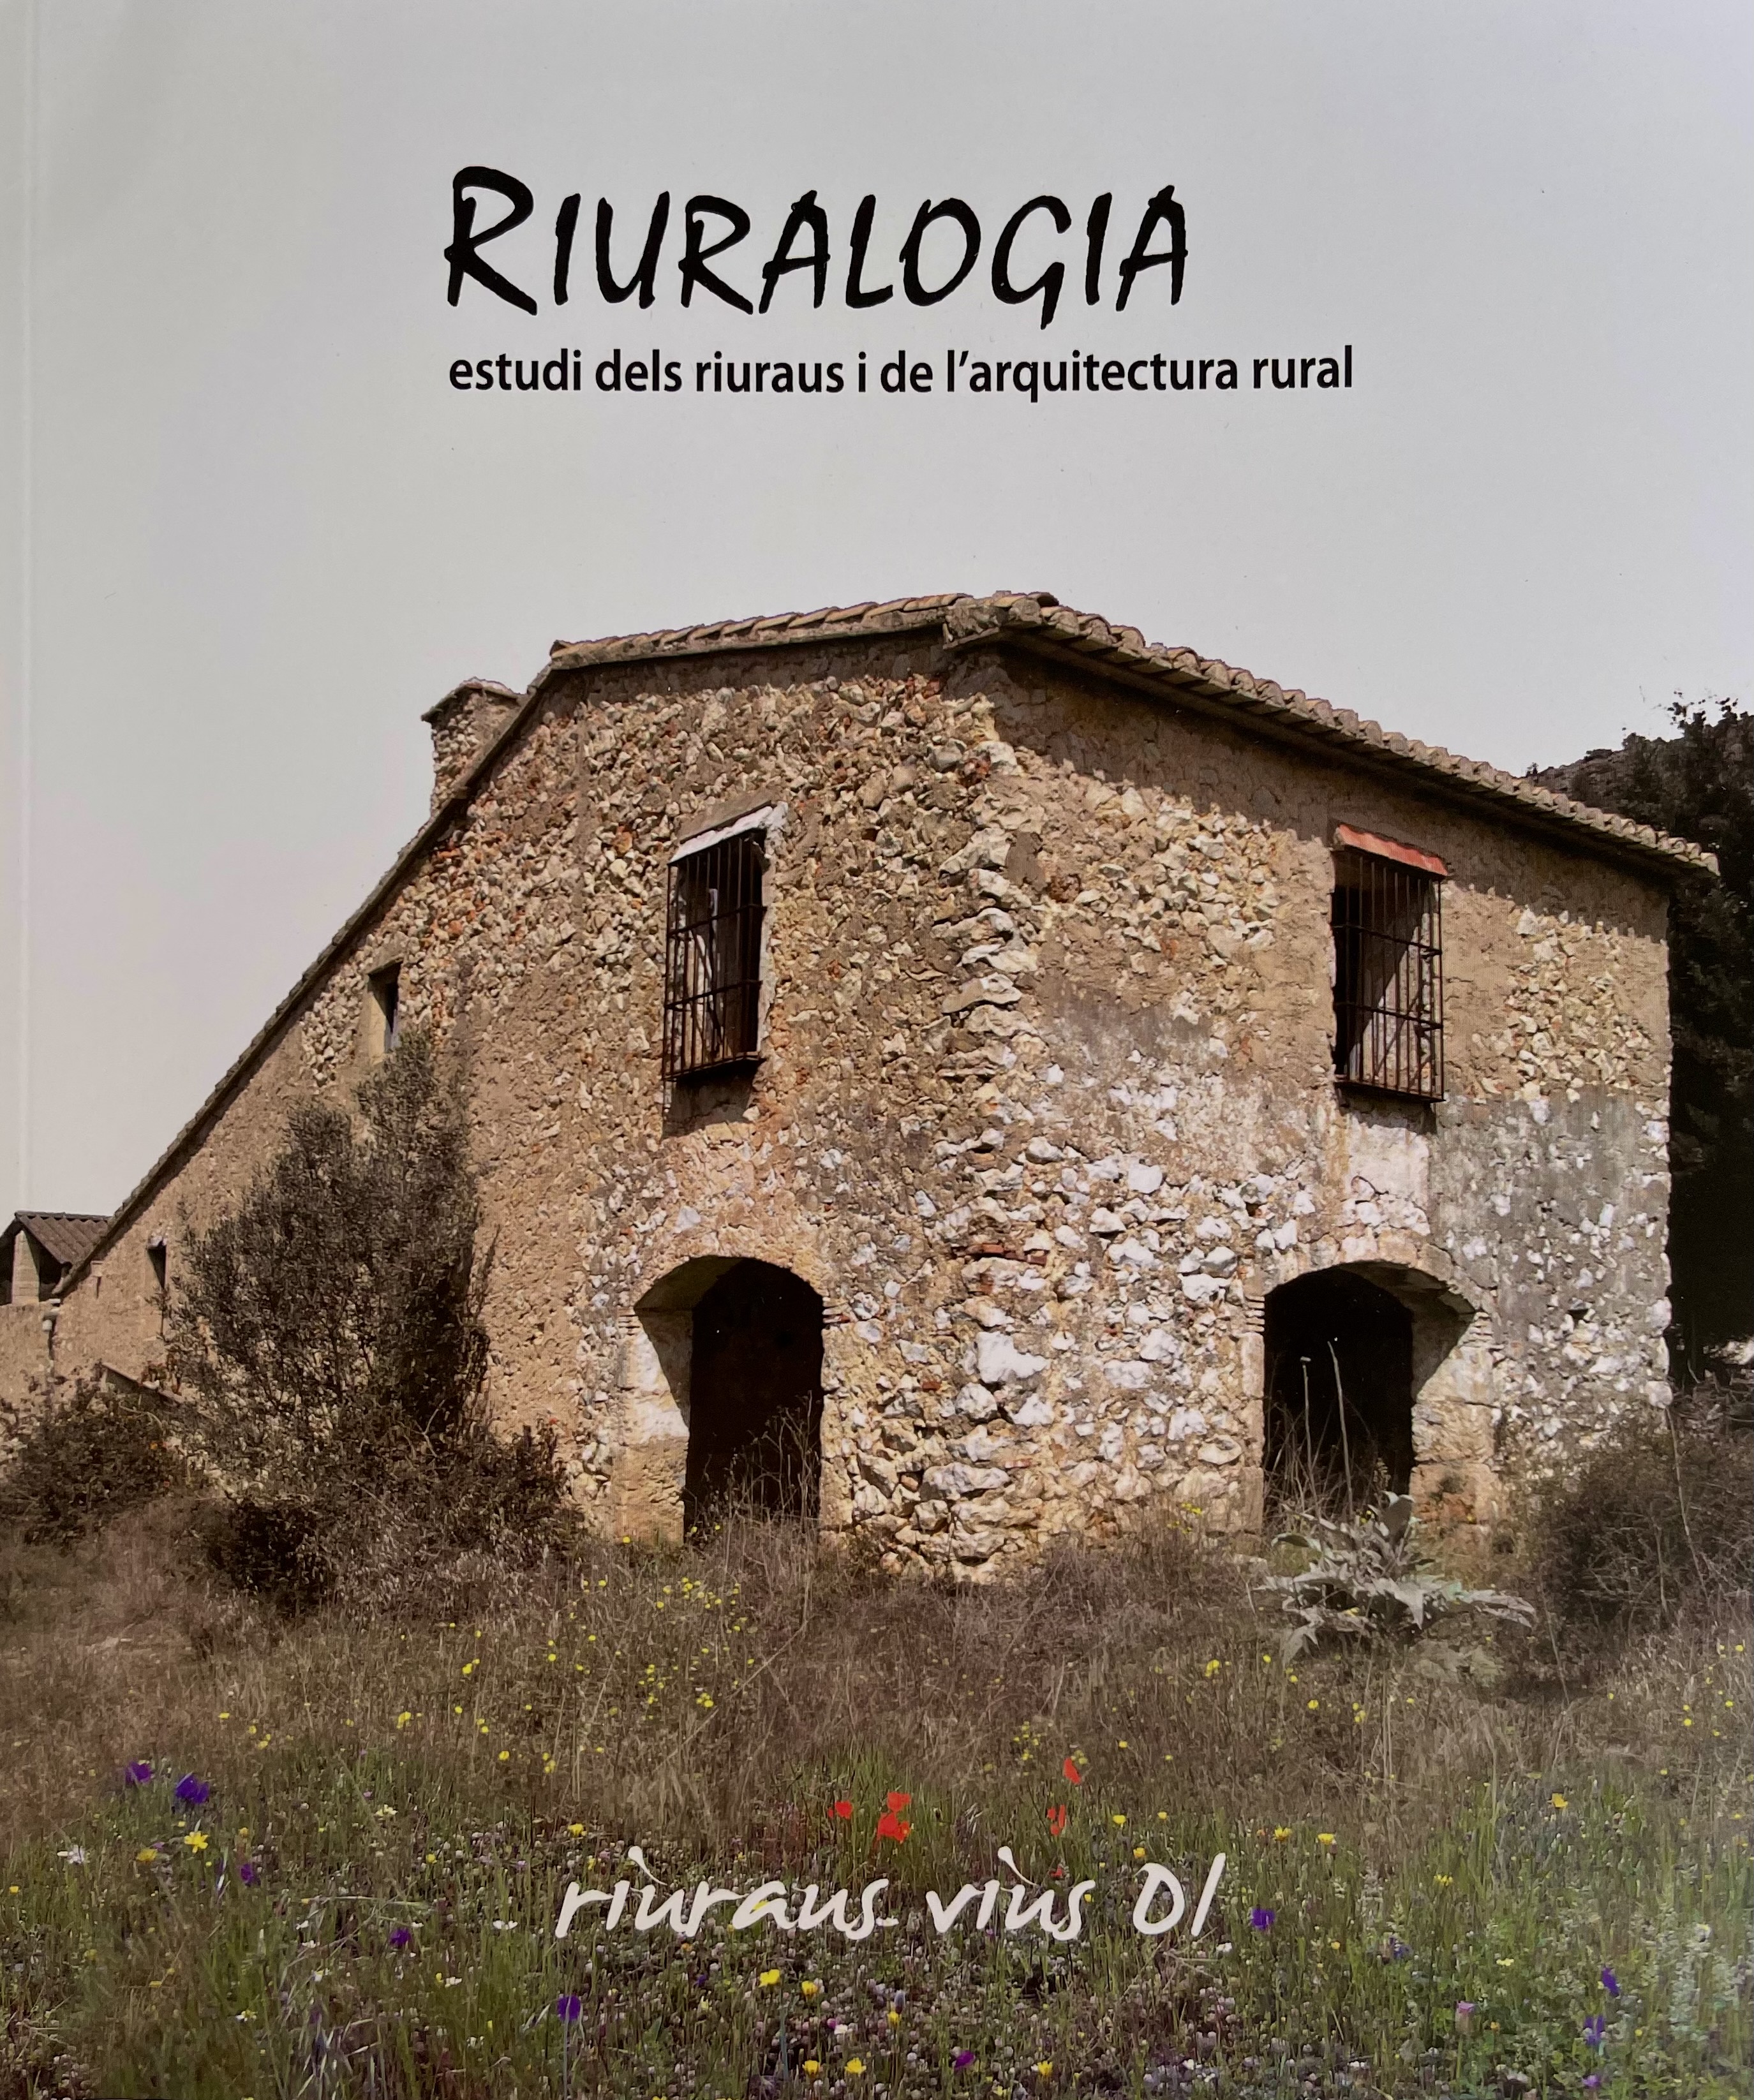 Riuralogia. Estudi dels riuraus i de l'arquitectura rural nº1